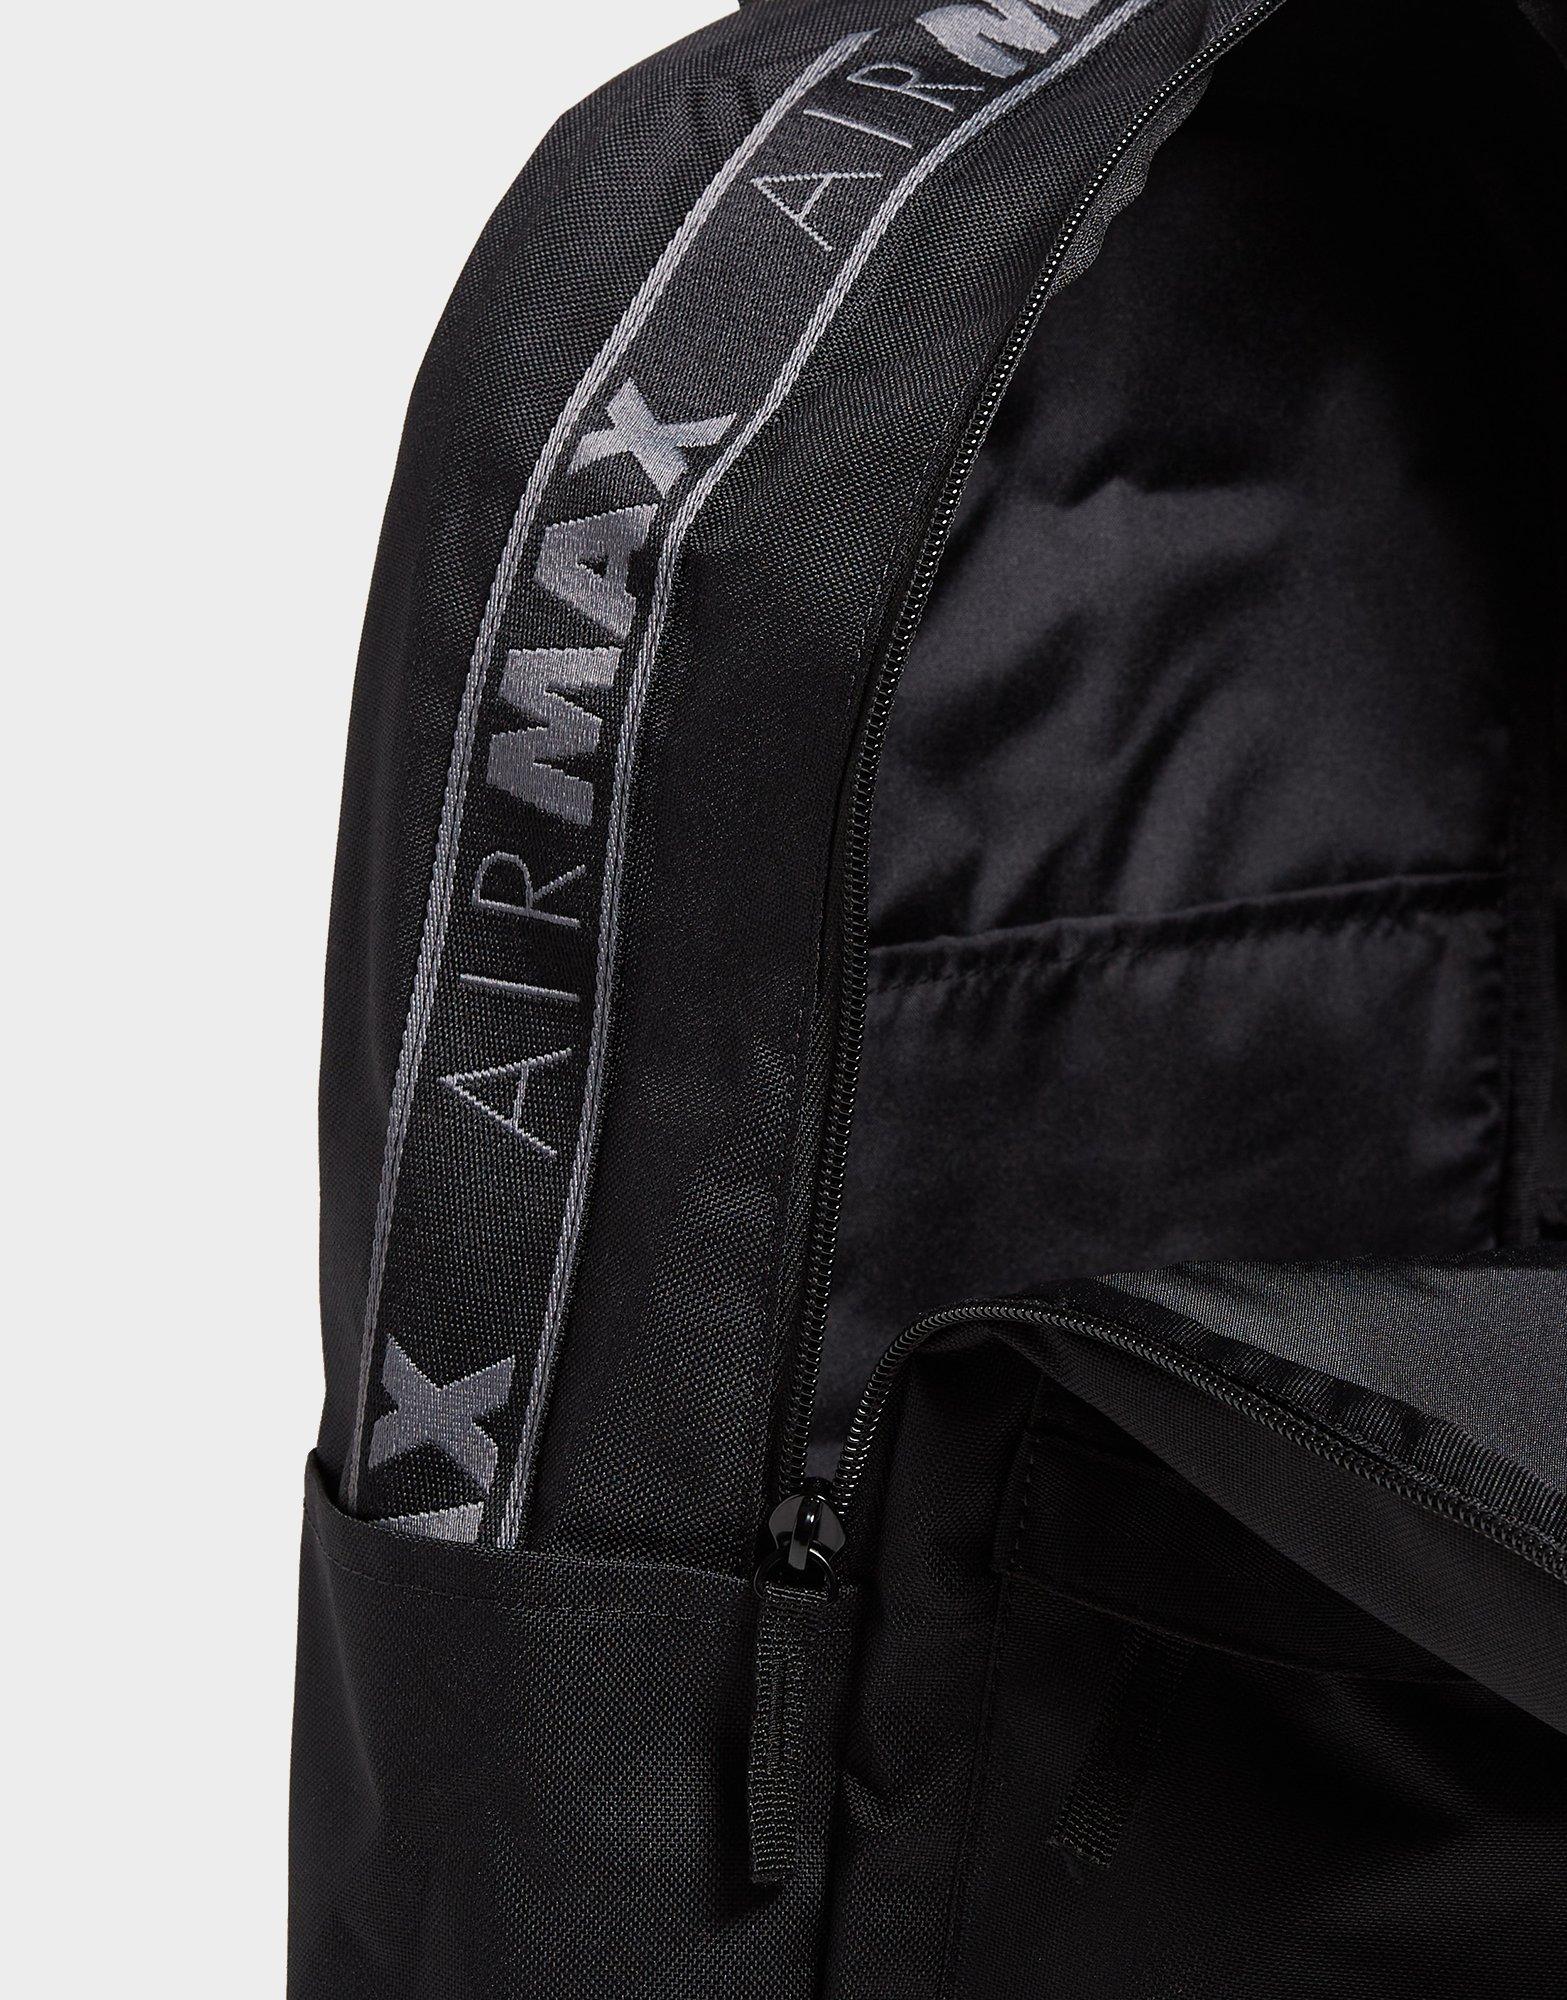 Black Nike Air Max Backpack - JD Sports